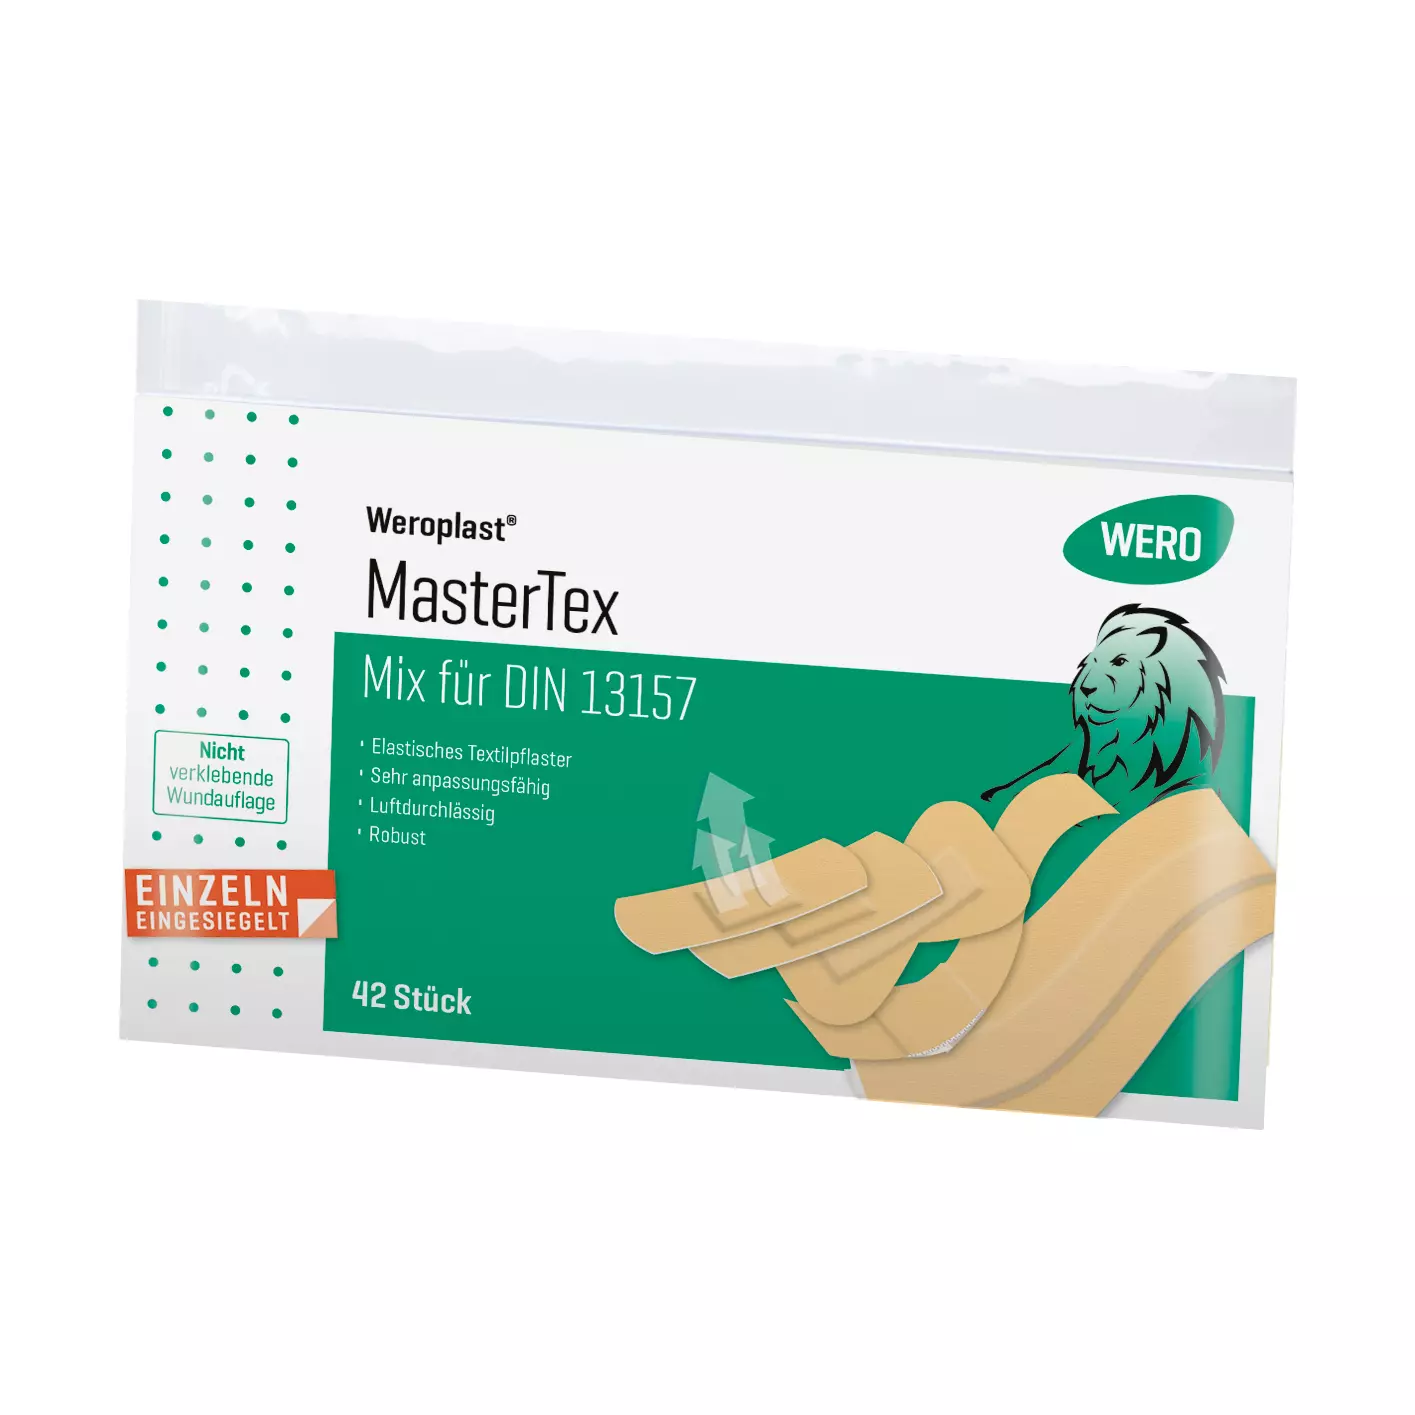 Weroplast MasterTex Mix für DIN 13157 im Folienbeutel